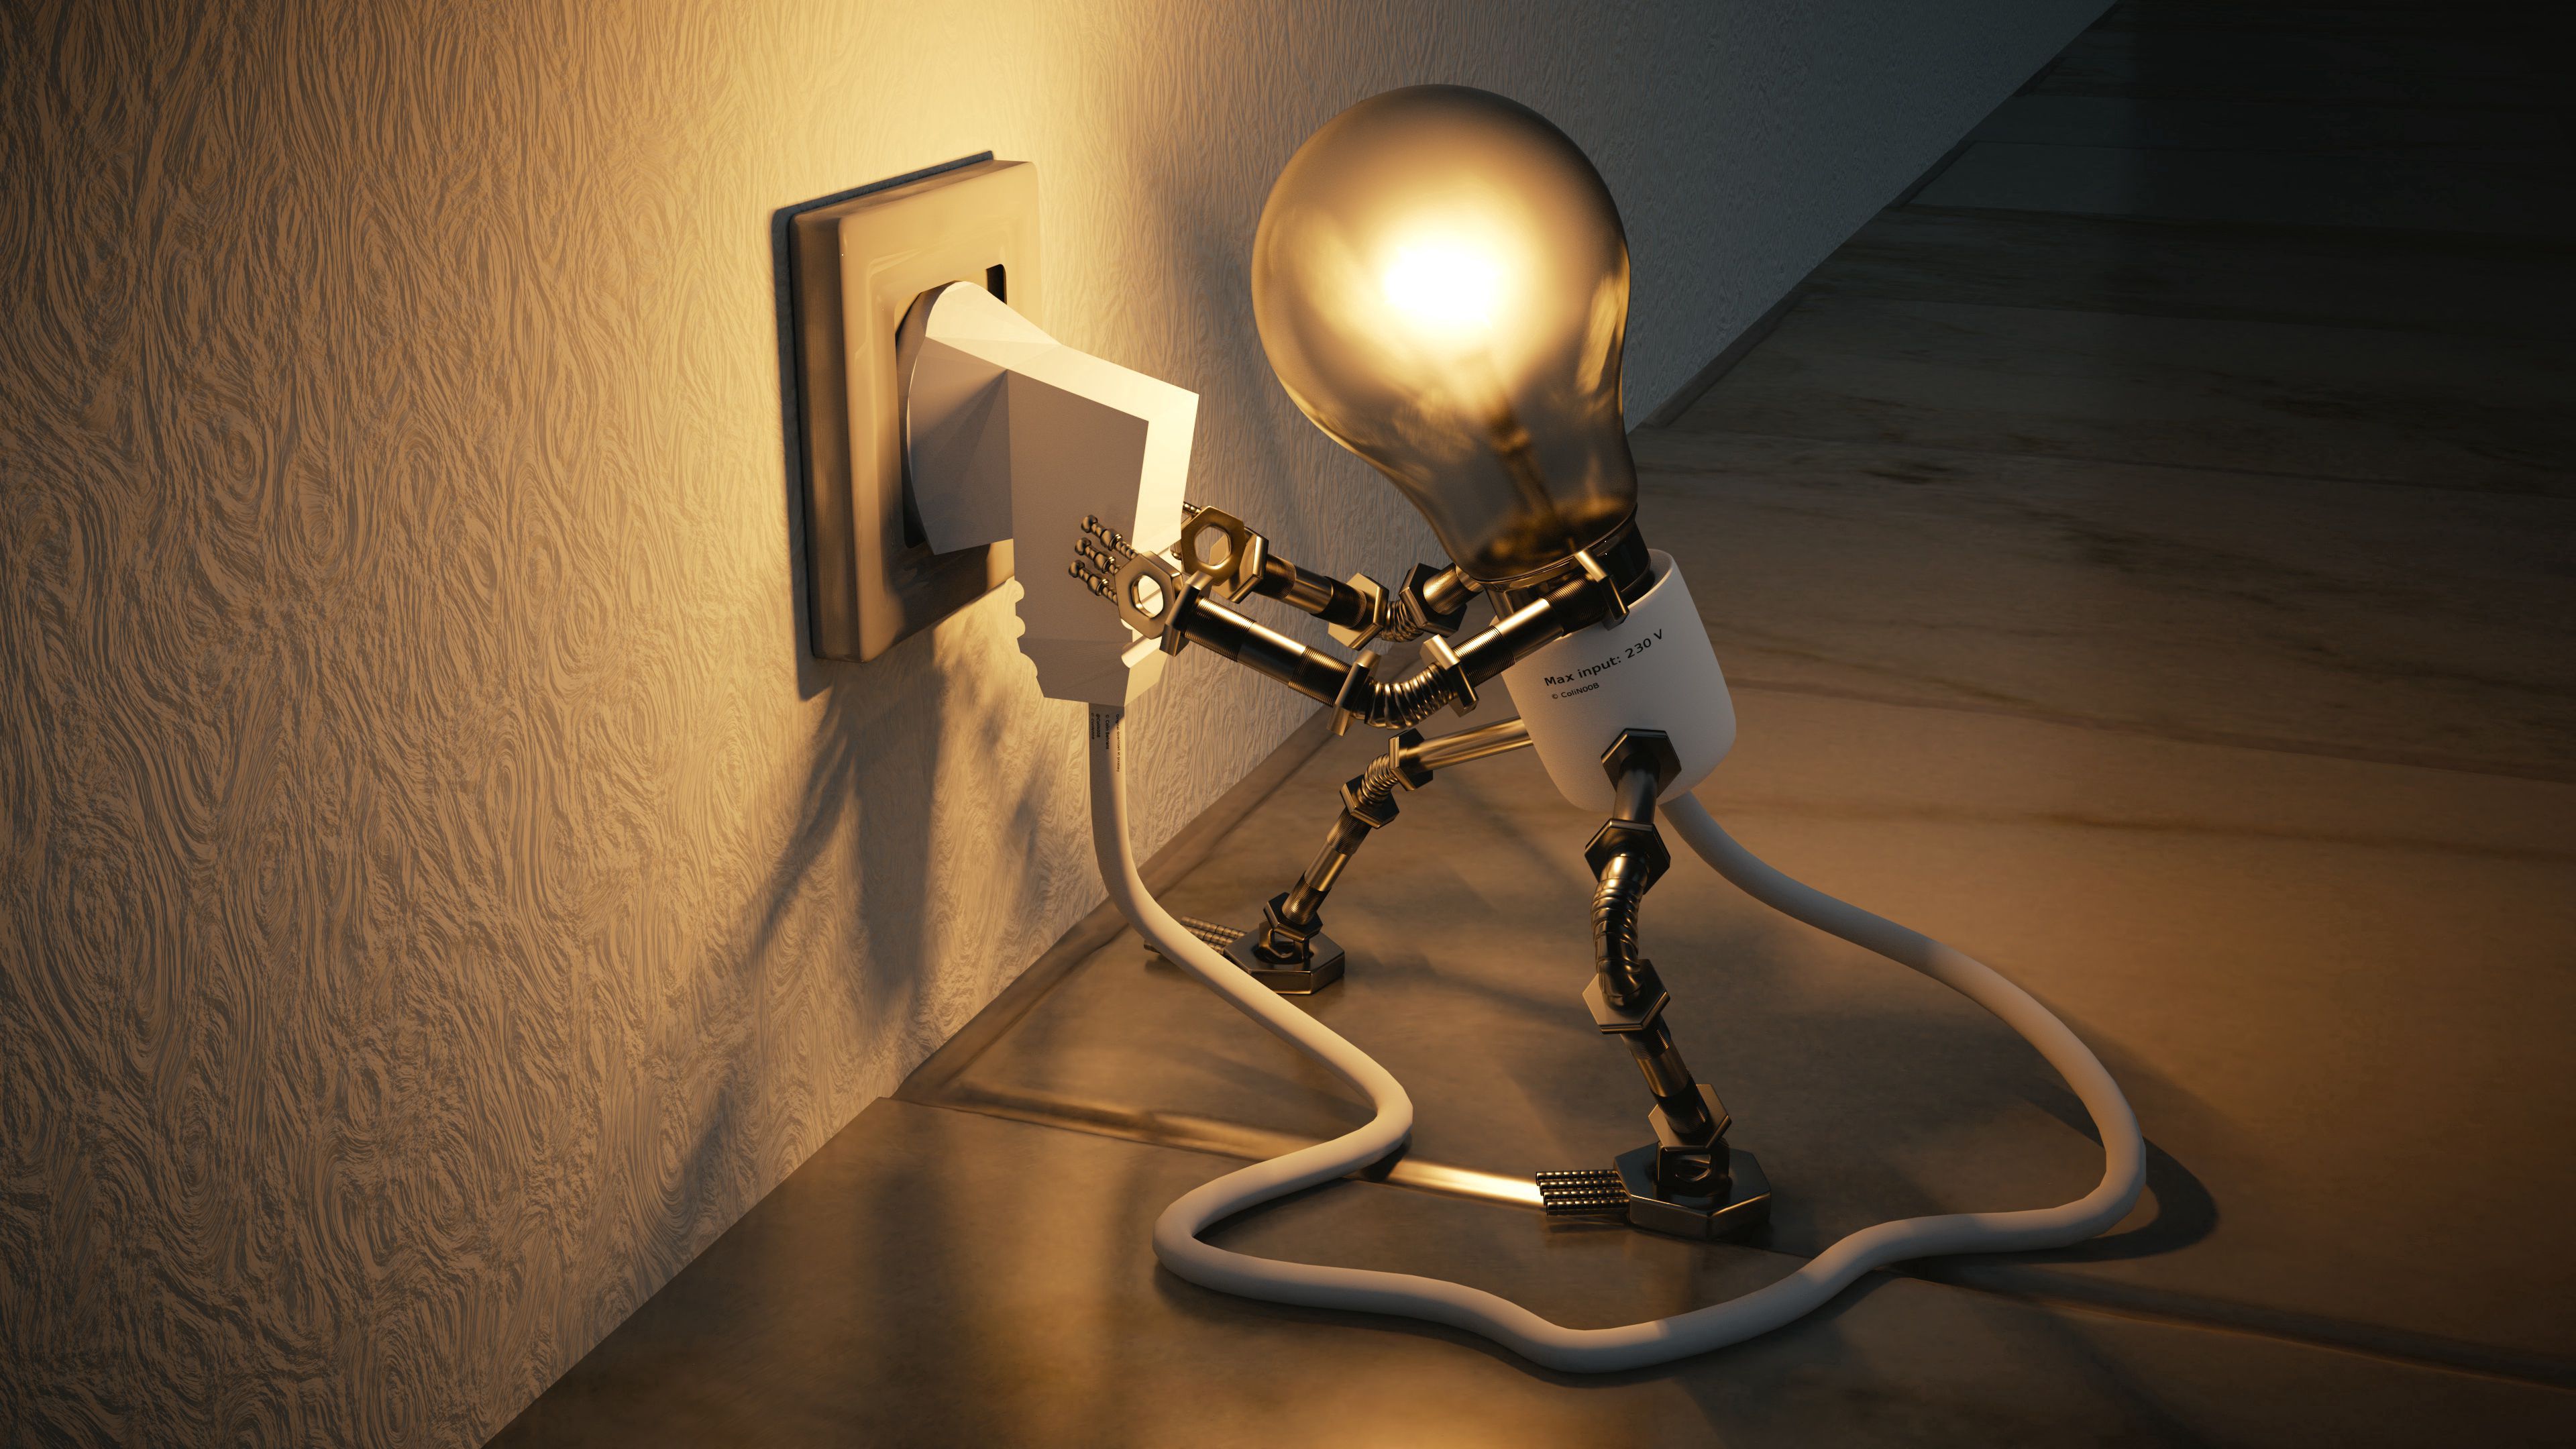 3d, lamp, socket, electricity, idea, rosette